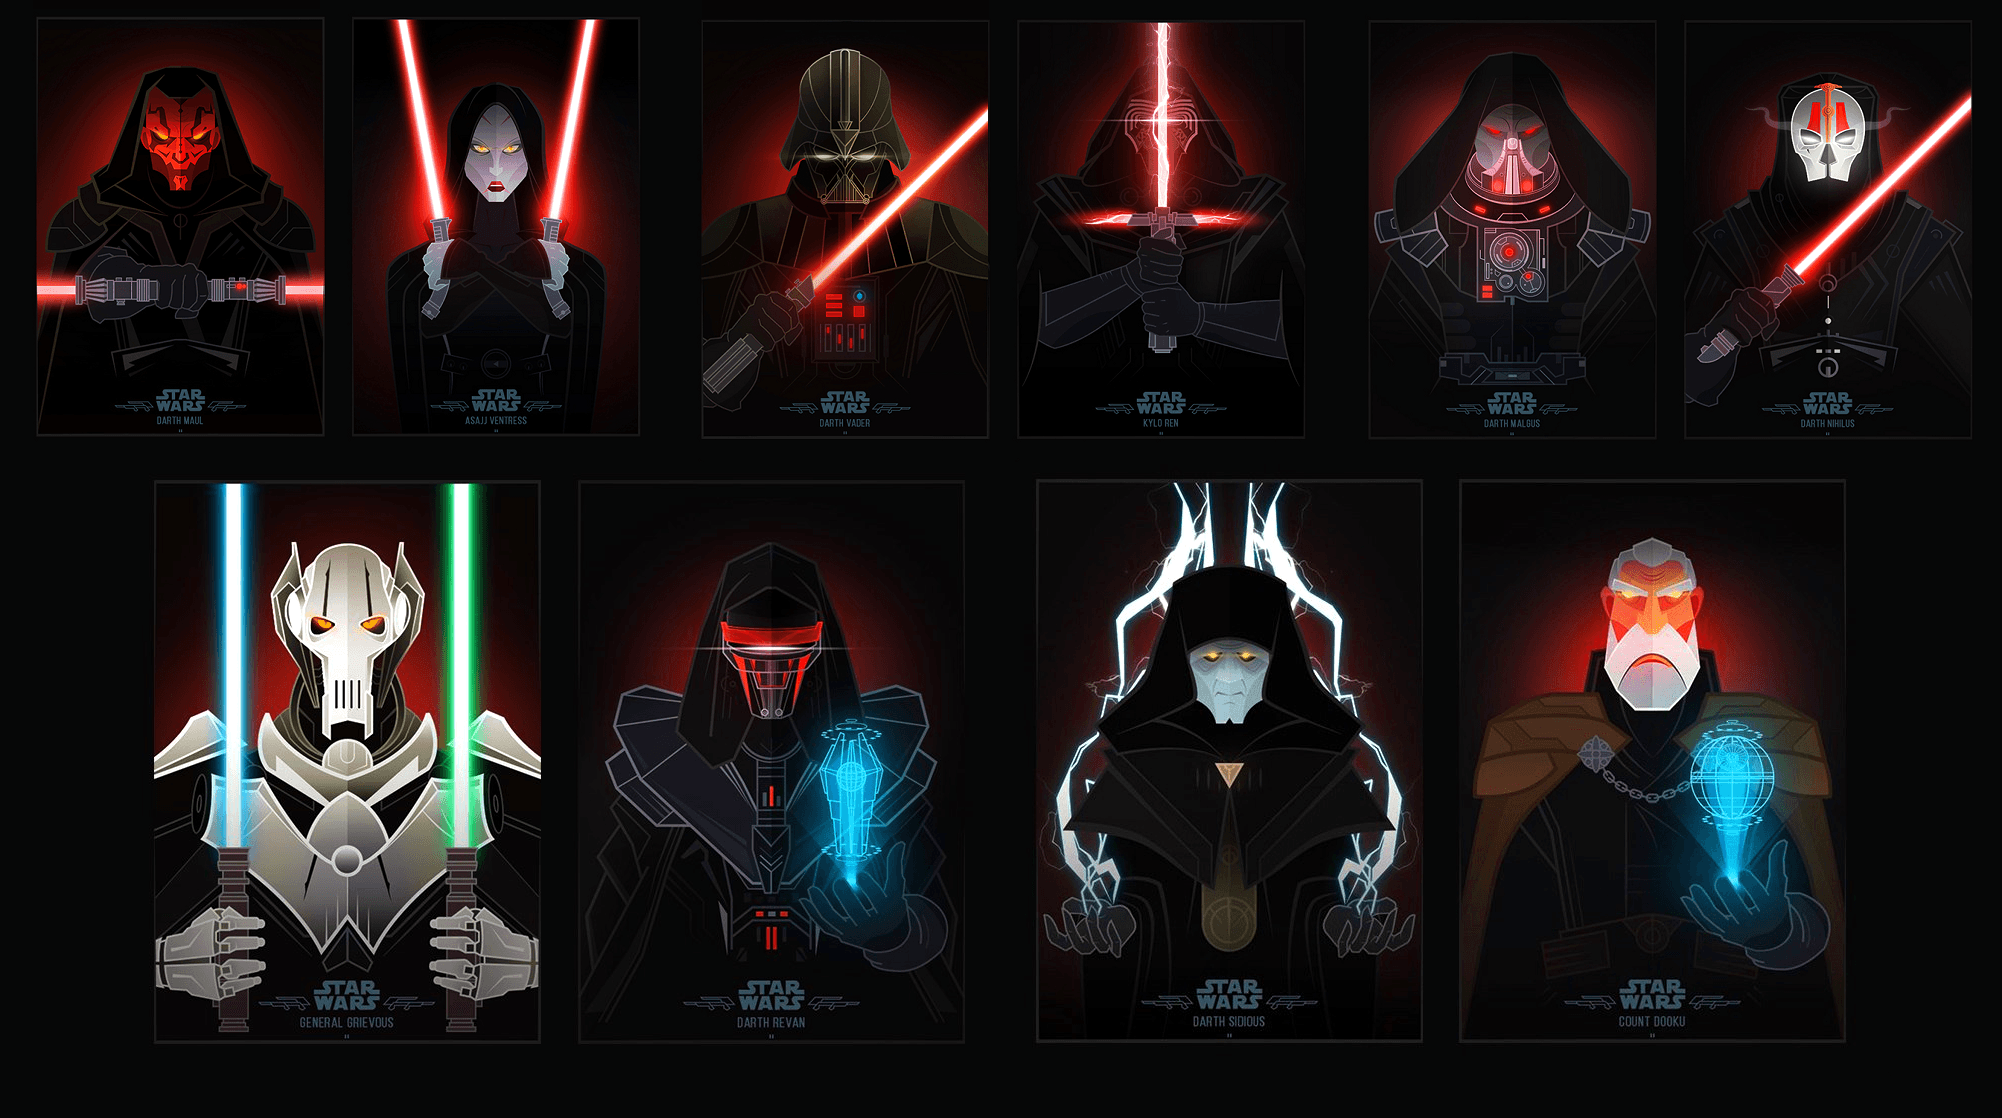 Sith Darth Vader Star Wars Wallpapers